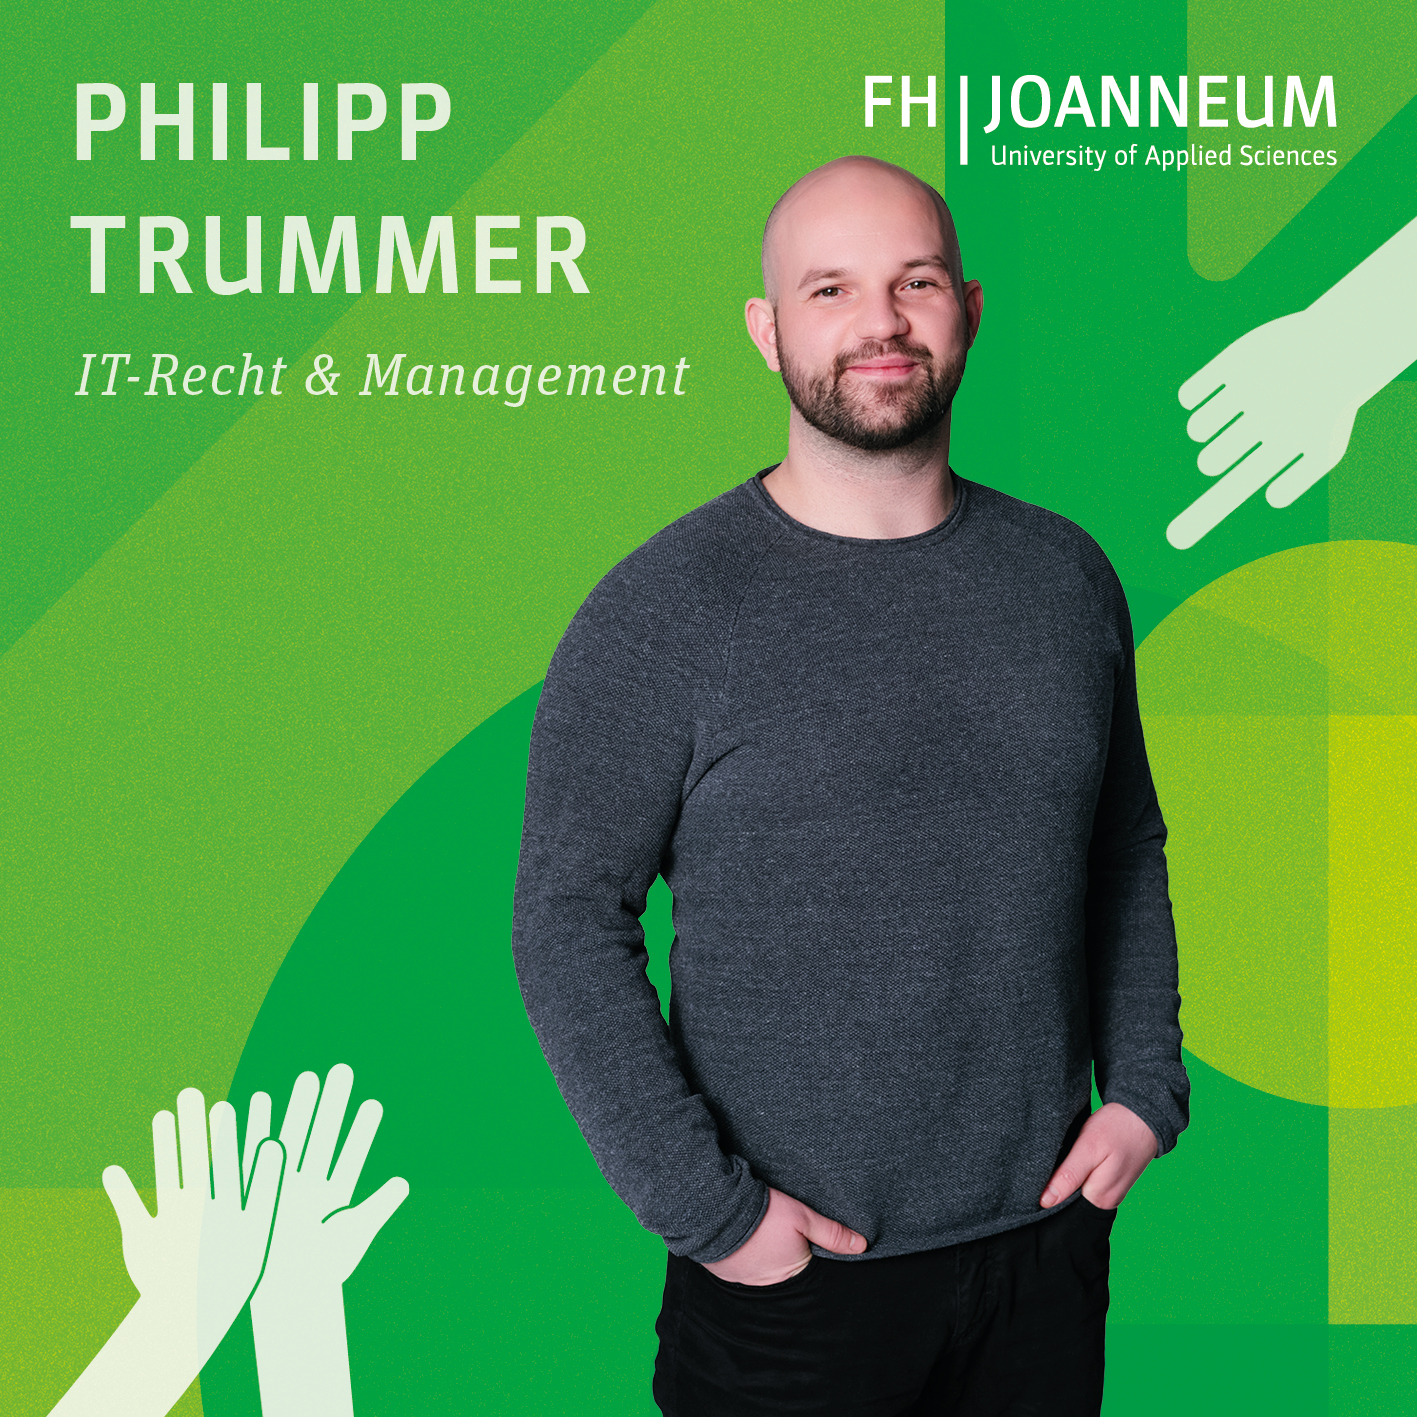 Philipp Trummer studiert IT-Recht & Management.